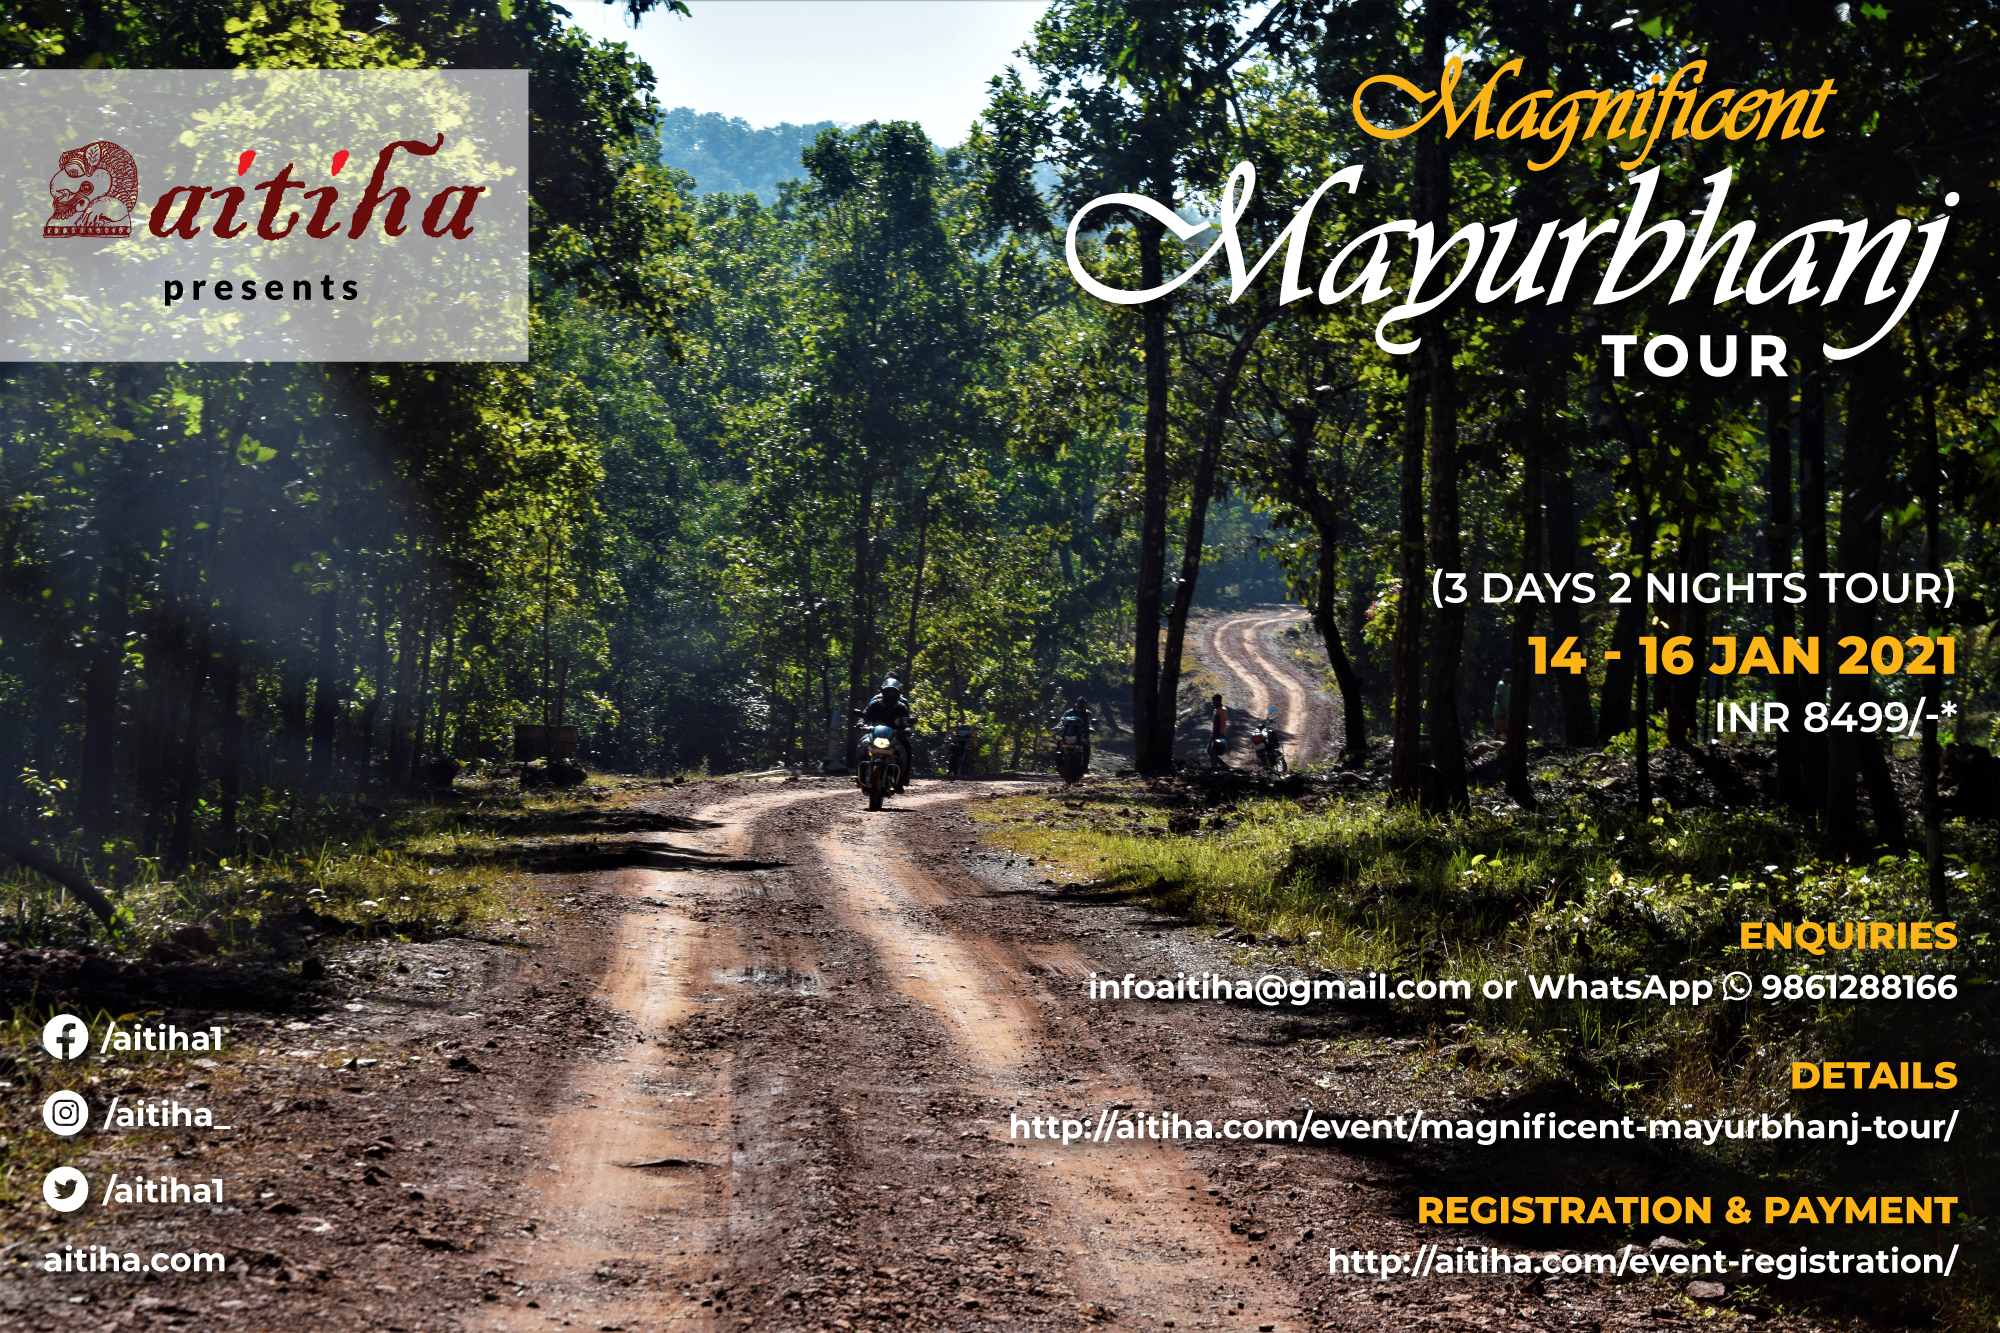 Magnificent Mayurbhanj Tour